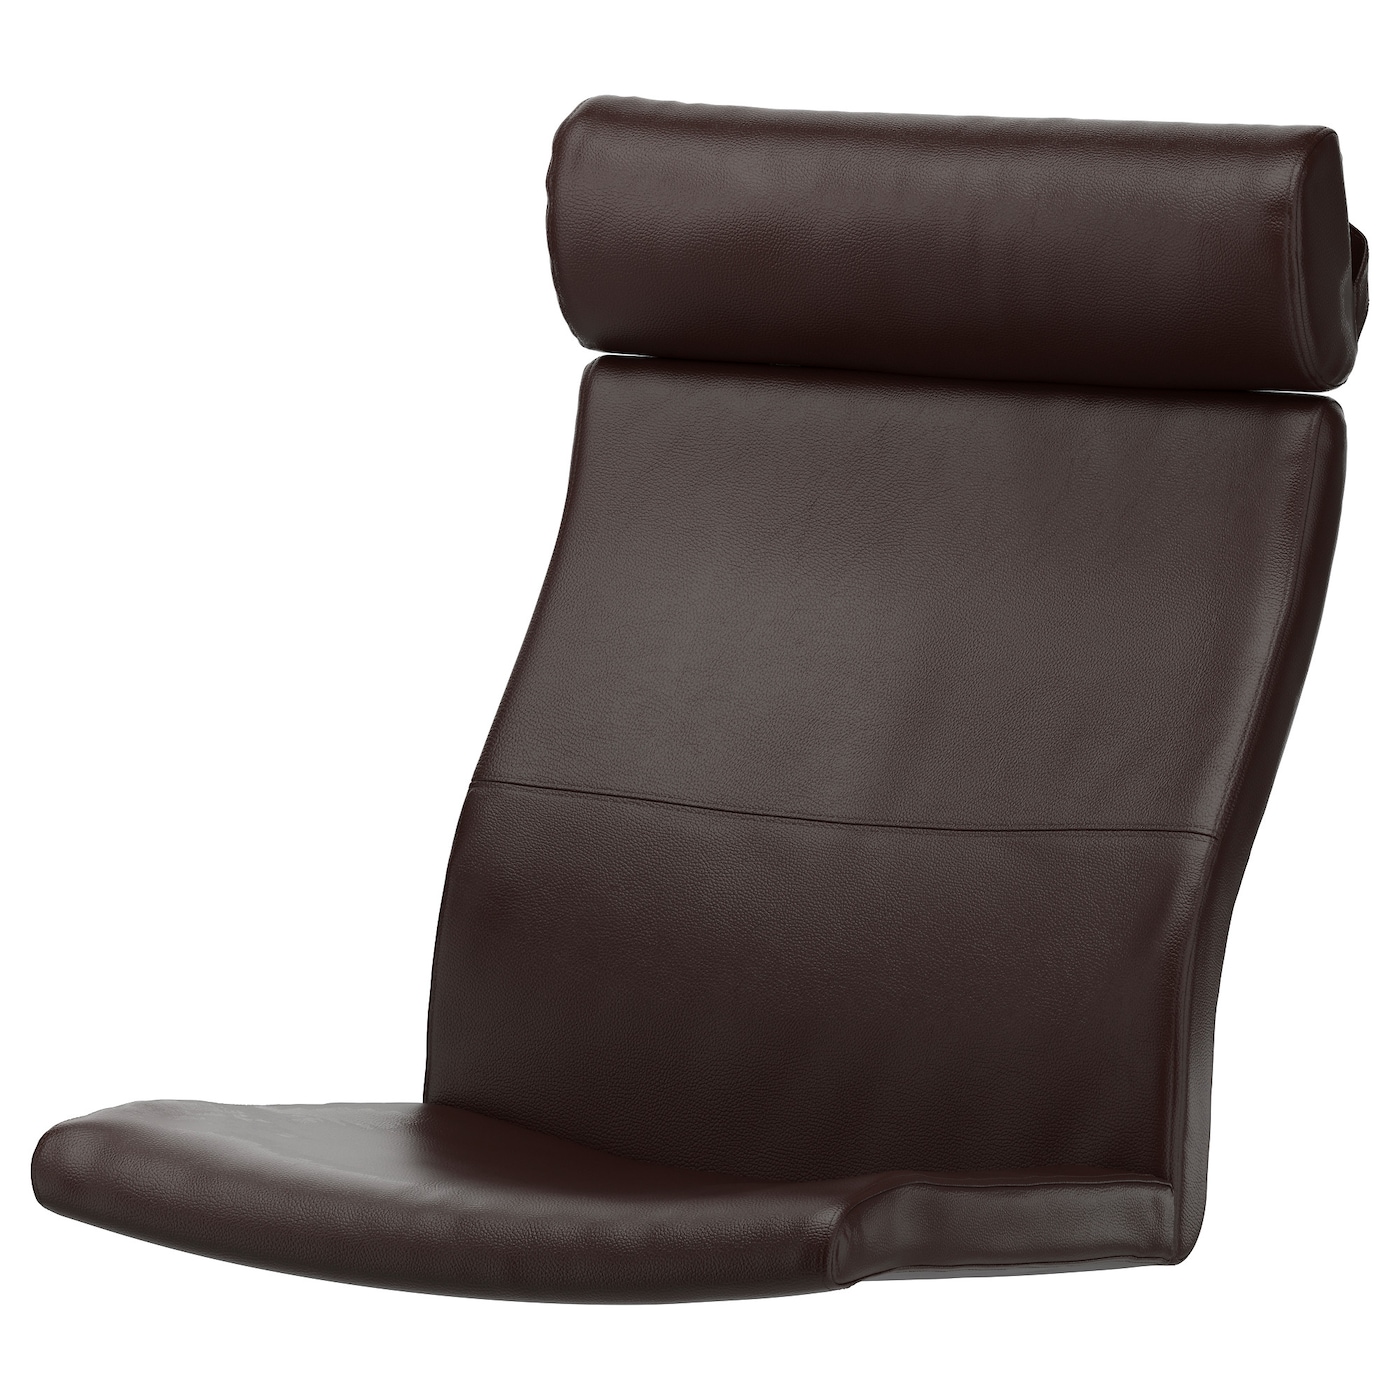 Подушка на кресло - POÄNG /POANG IKEA /  ПОЭНГ ИКЕА,  137х56 см, коричневый